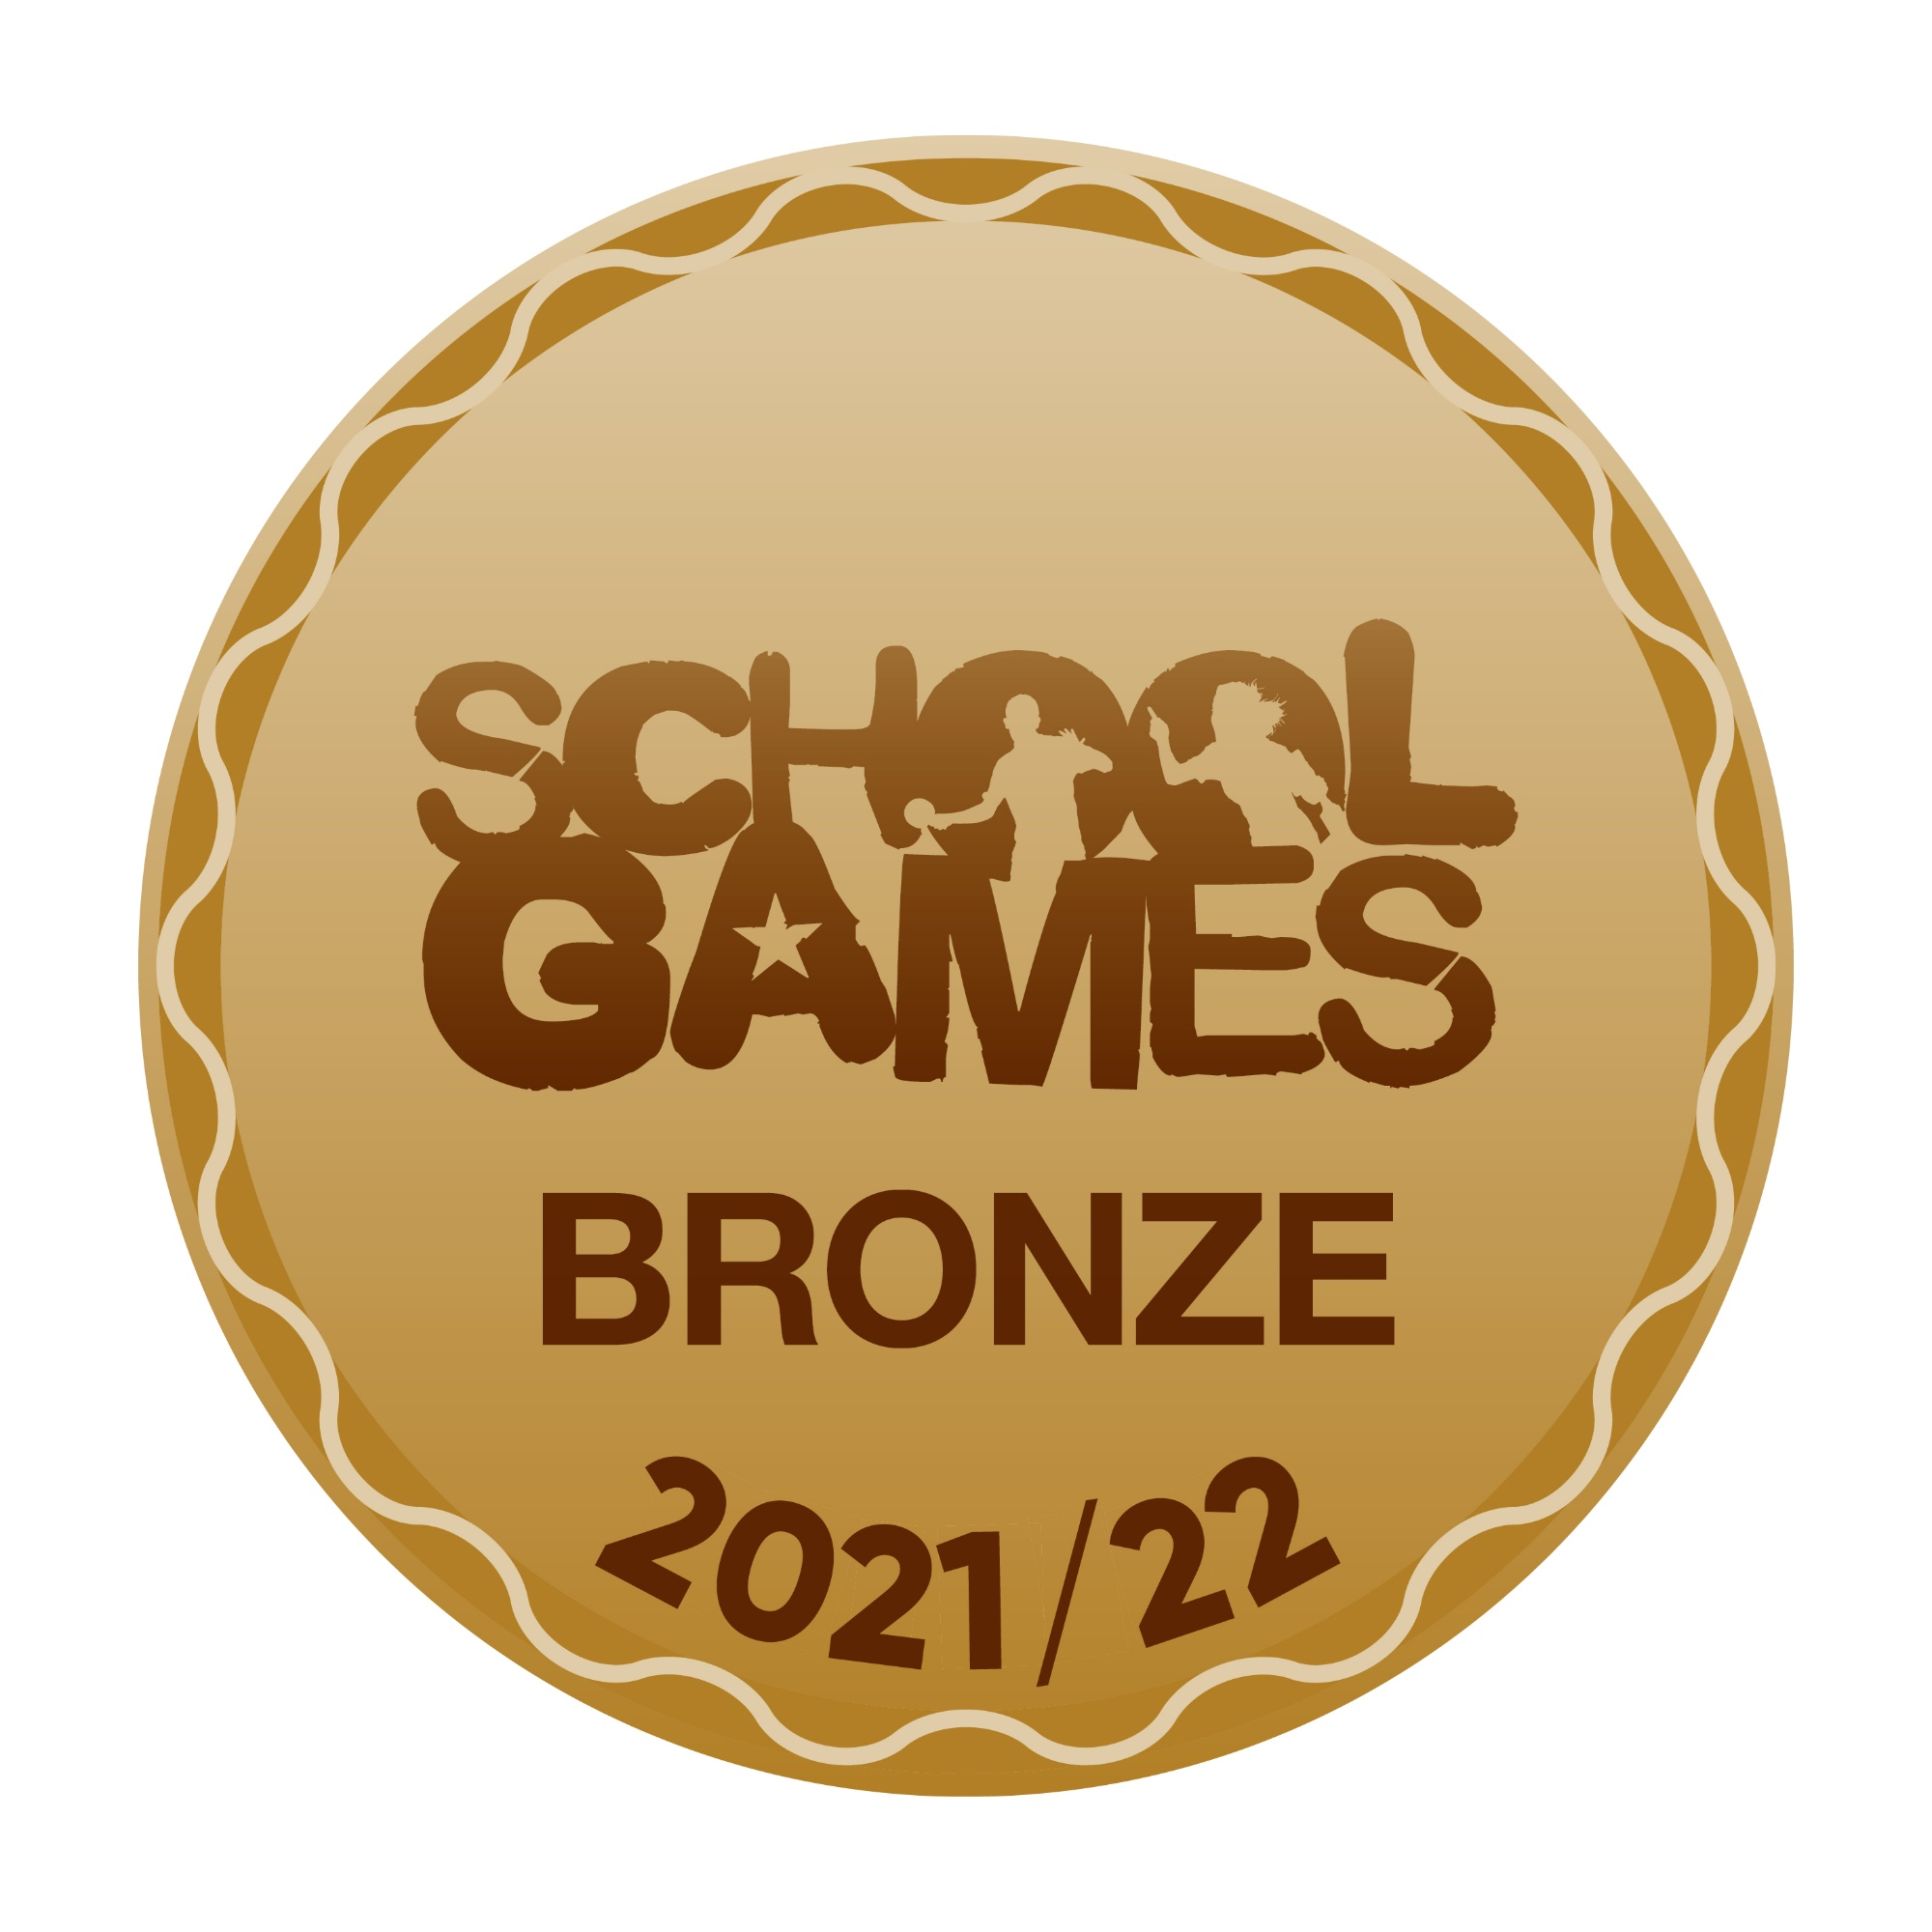 School Games Bronze Award 21/22